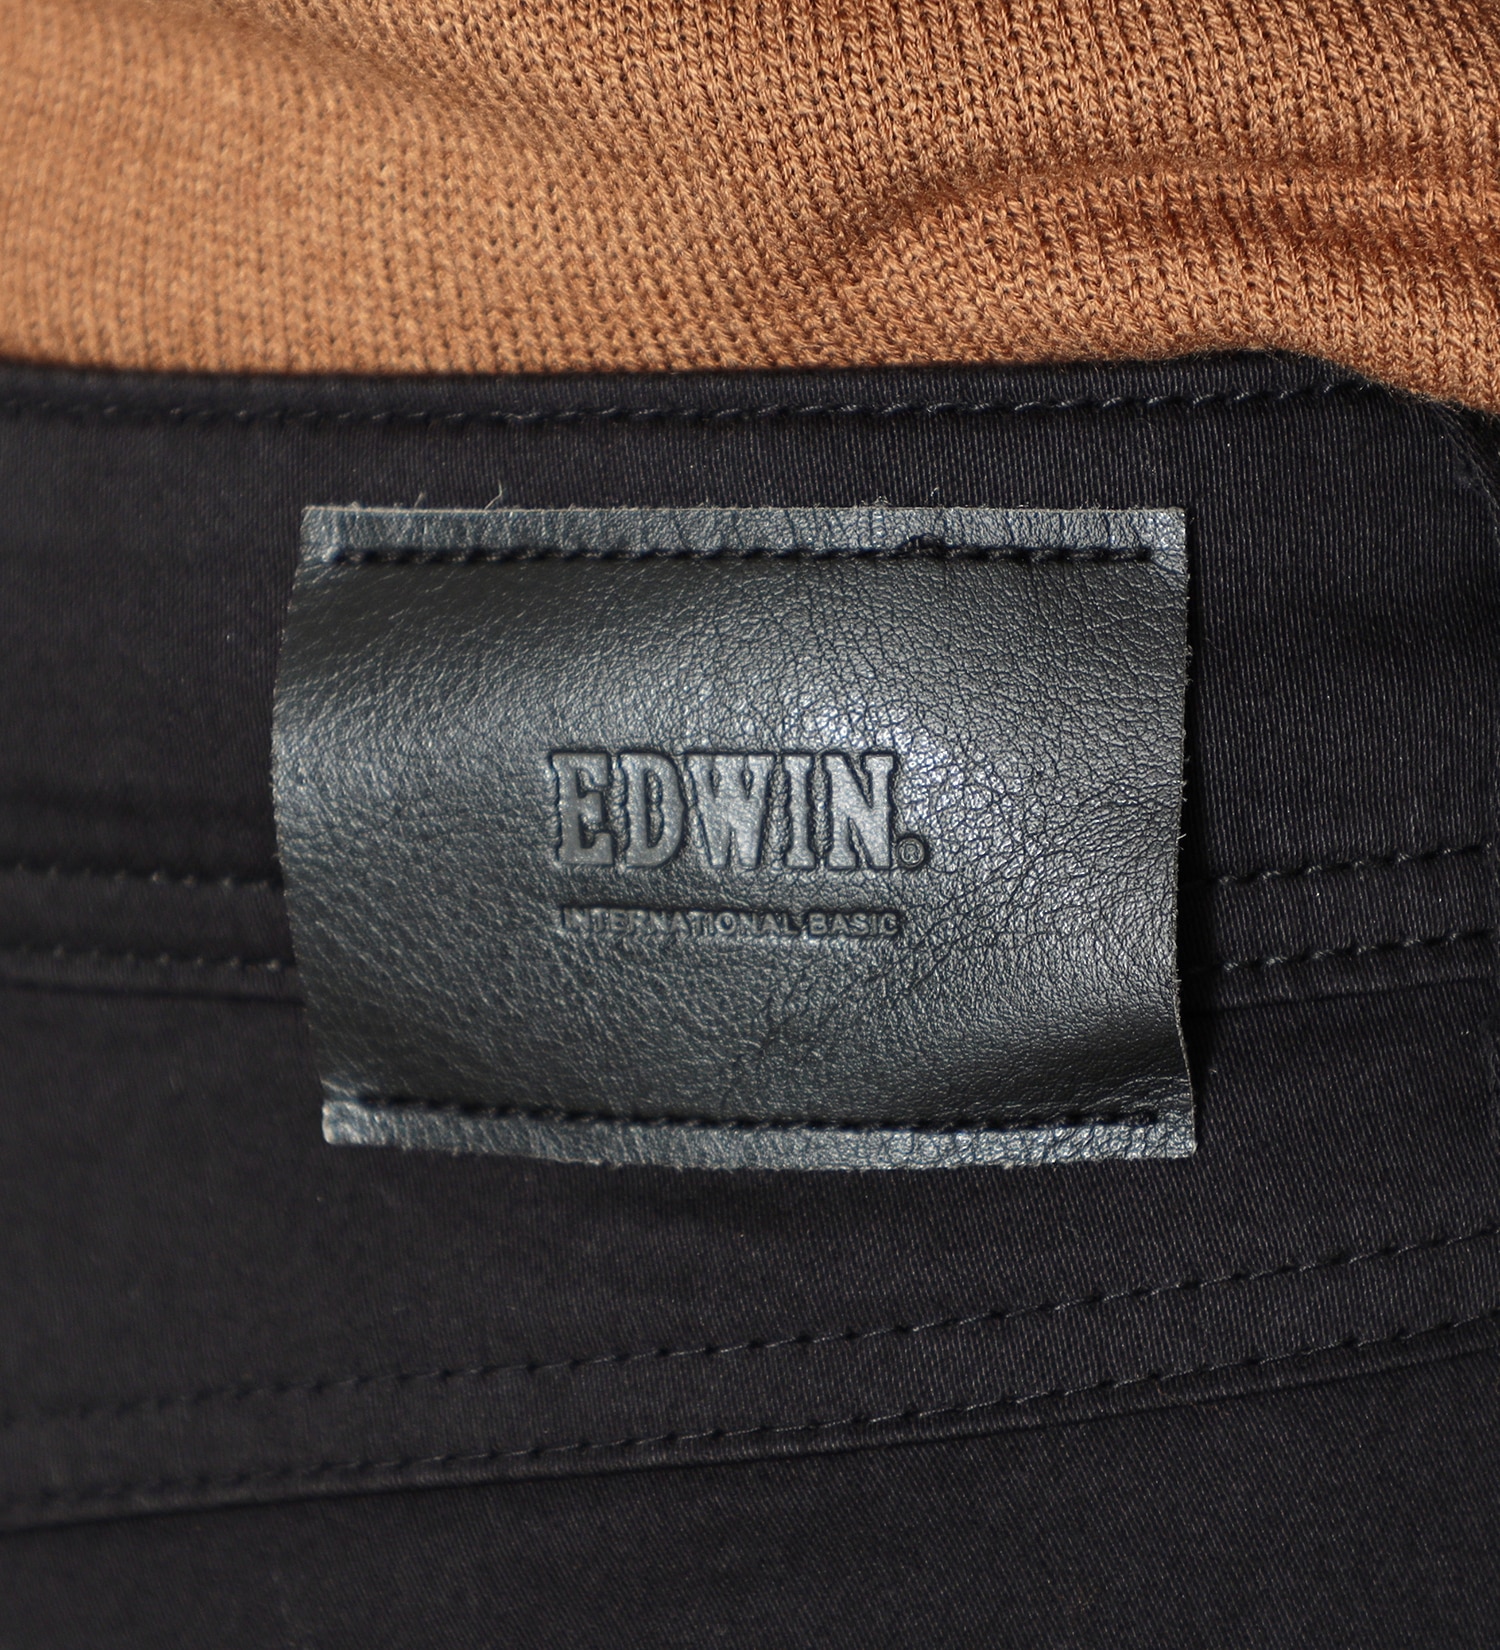 EDWIN(エドウイン)のEDWIN LADIES インターナショナルベーシック 股上深め ゆったりストレートパンツ|パンツ/パンツ/レディース|ブラック